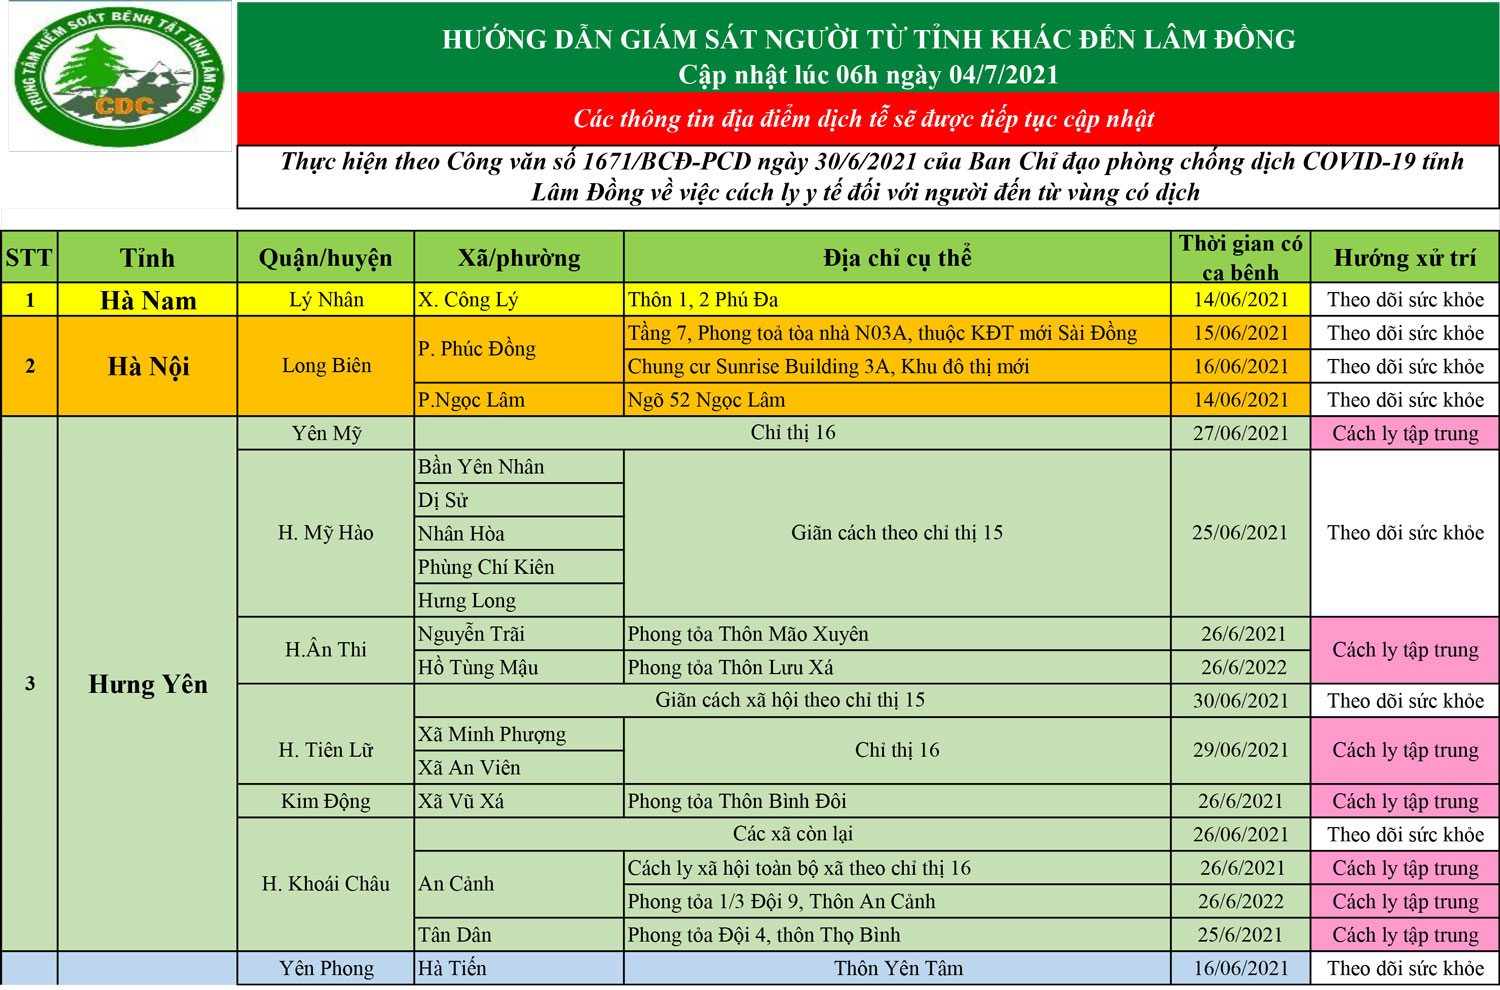 CDC tỉnh Lâm Đồng hướng dẫn giám sát người từ tỉnh khác đến Lâm Đồng (cập nhật lúc 6h ngày 4/7/2021)